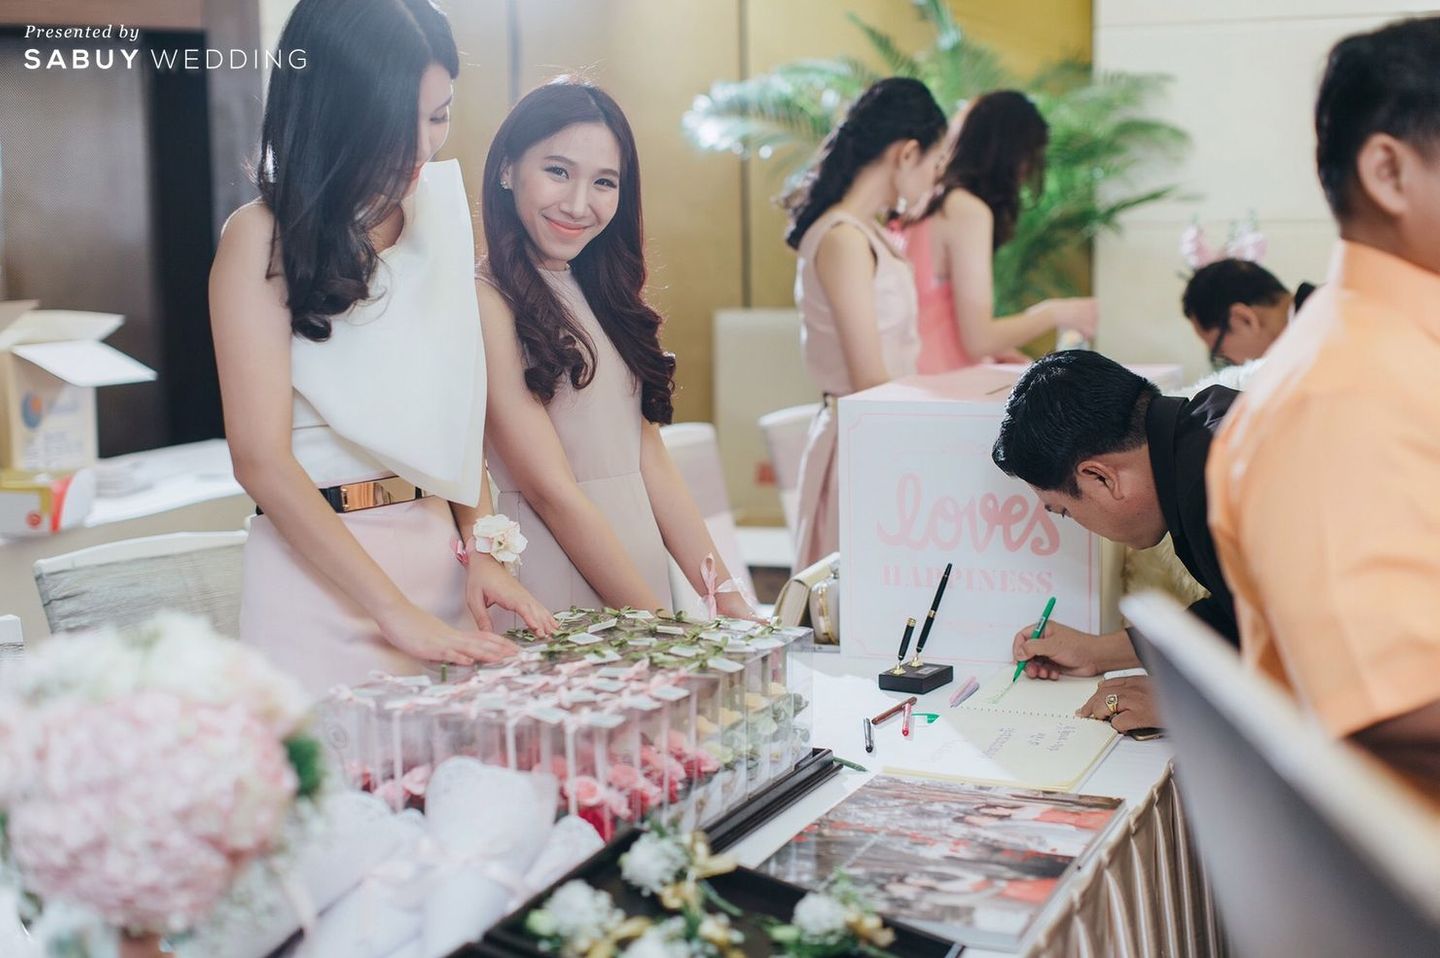 งานแต่งงาน,ของชำร่วยงานแต่ง,โต๊ะลงทะเบียนงานแต่ง รีวิวงานแต่งงานในฝัน สวยจบ ครบทุกฟีลใน 1 ฟลอร์ @The Landmark Bangkok